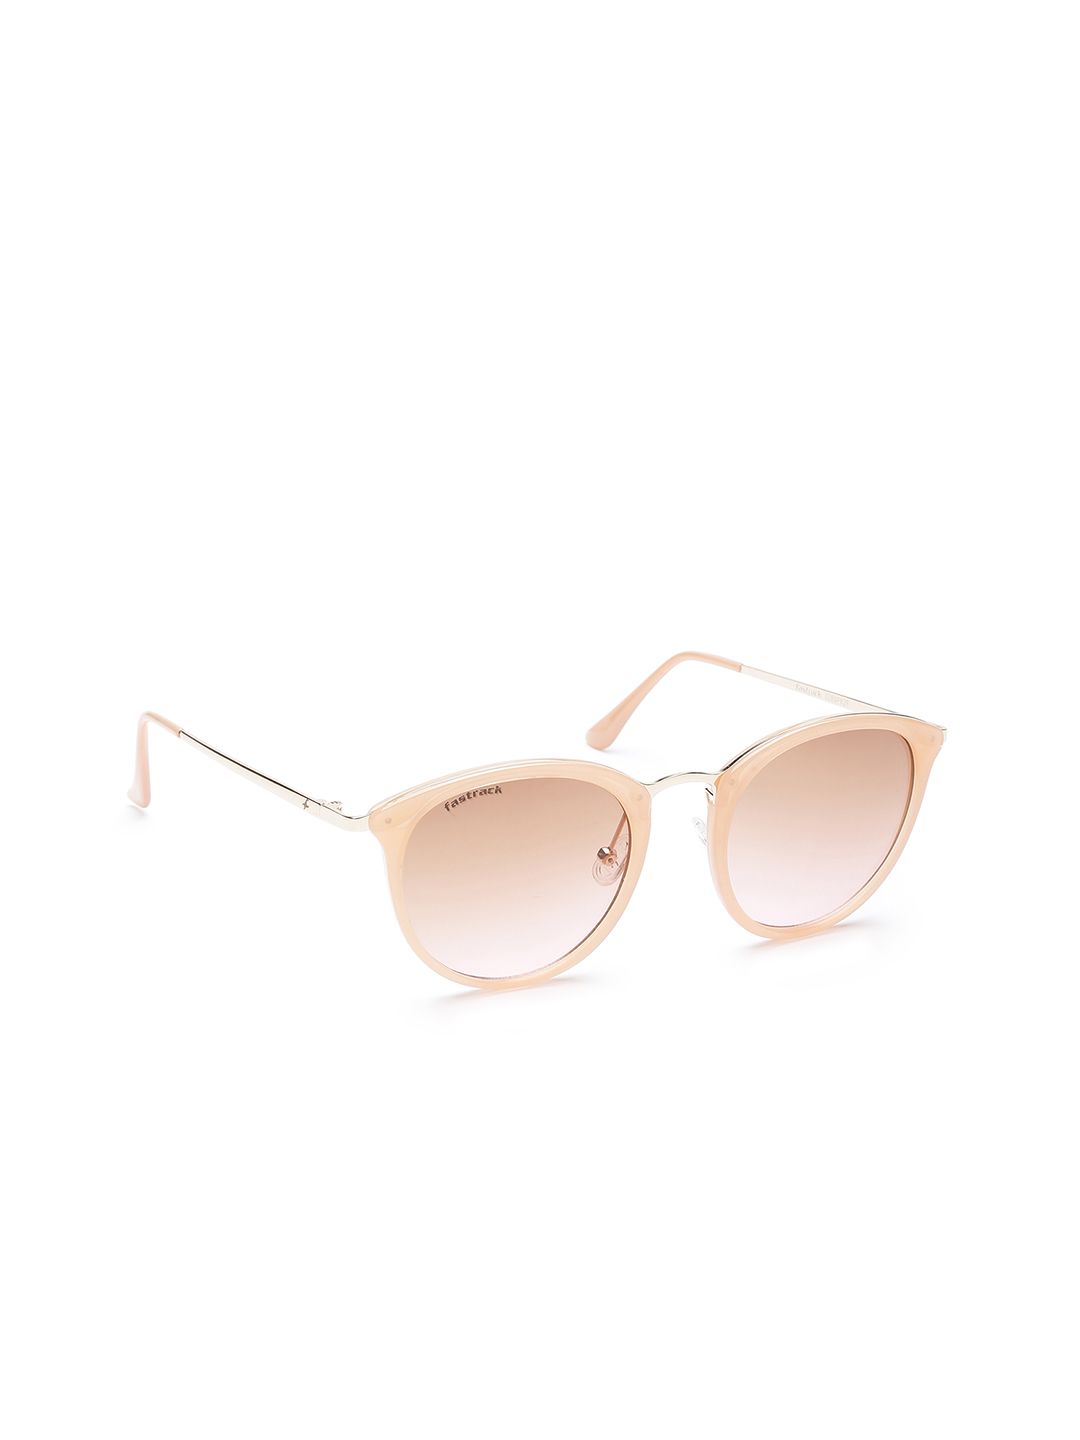 Fastrack Women Oval Sunglasses C084PK2F Price in India